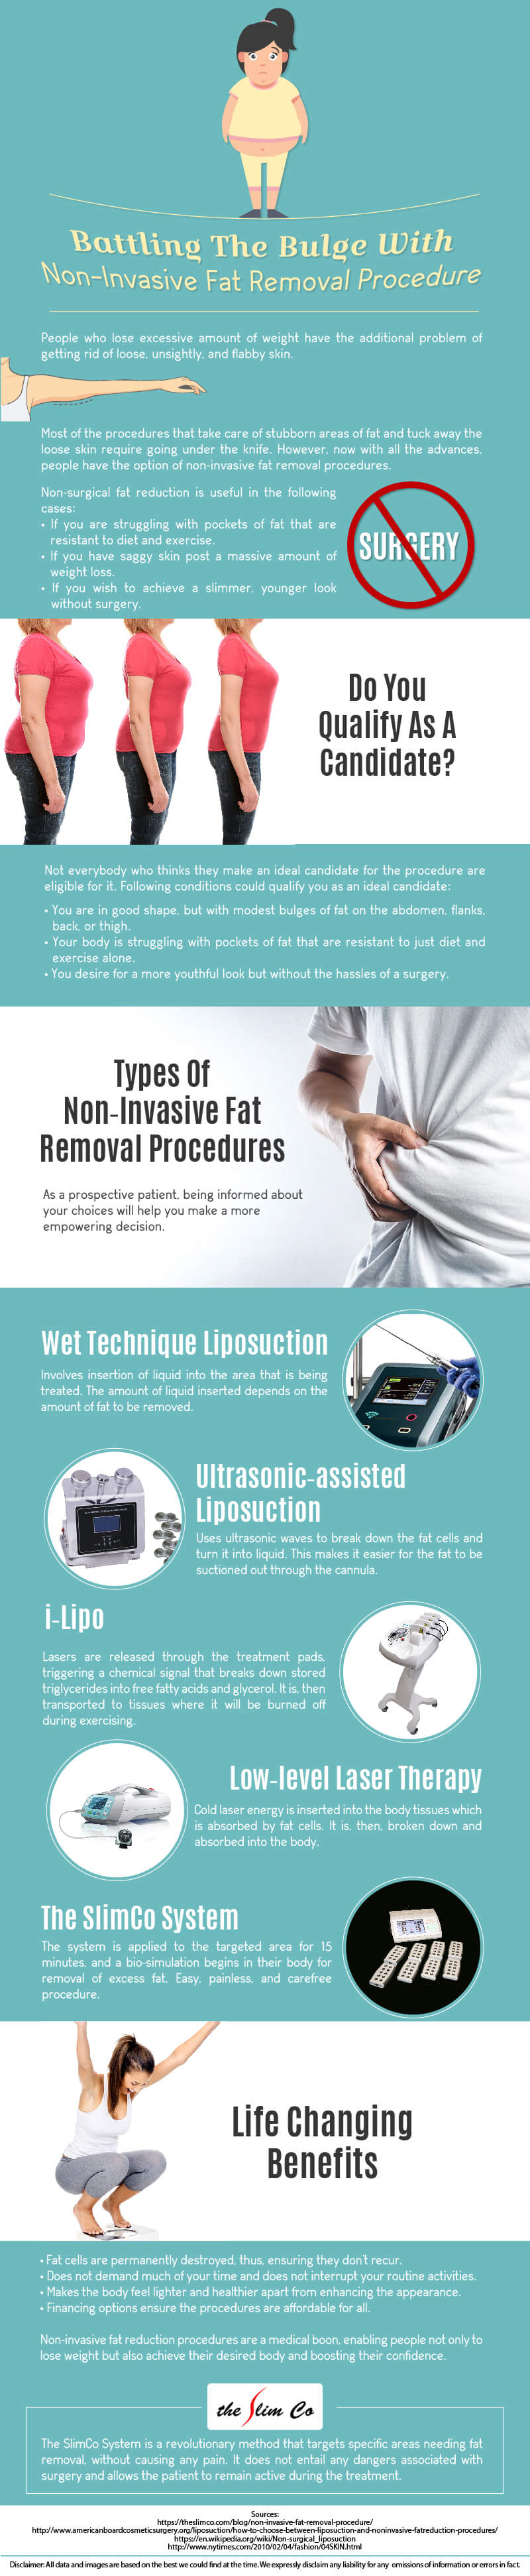 Non-Invasive-Fat-Removal-Procedure-infographic-plaza